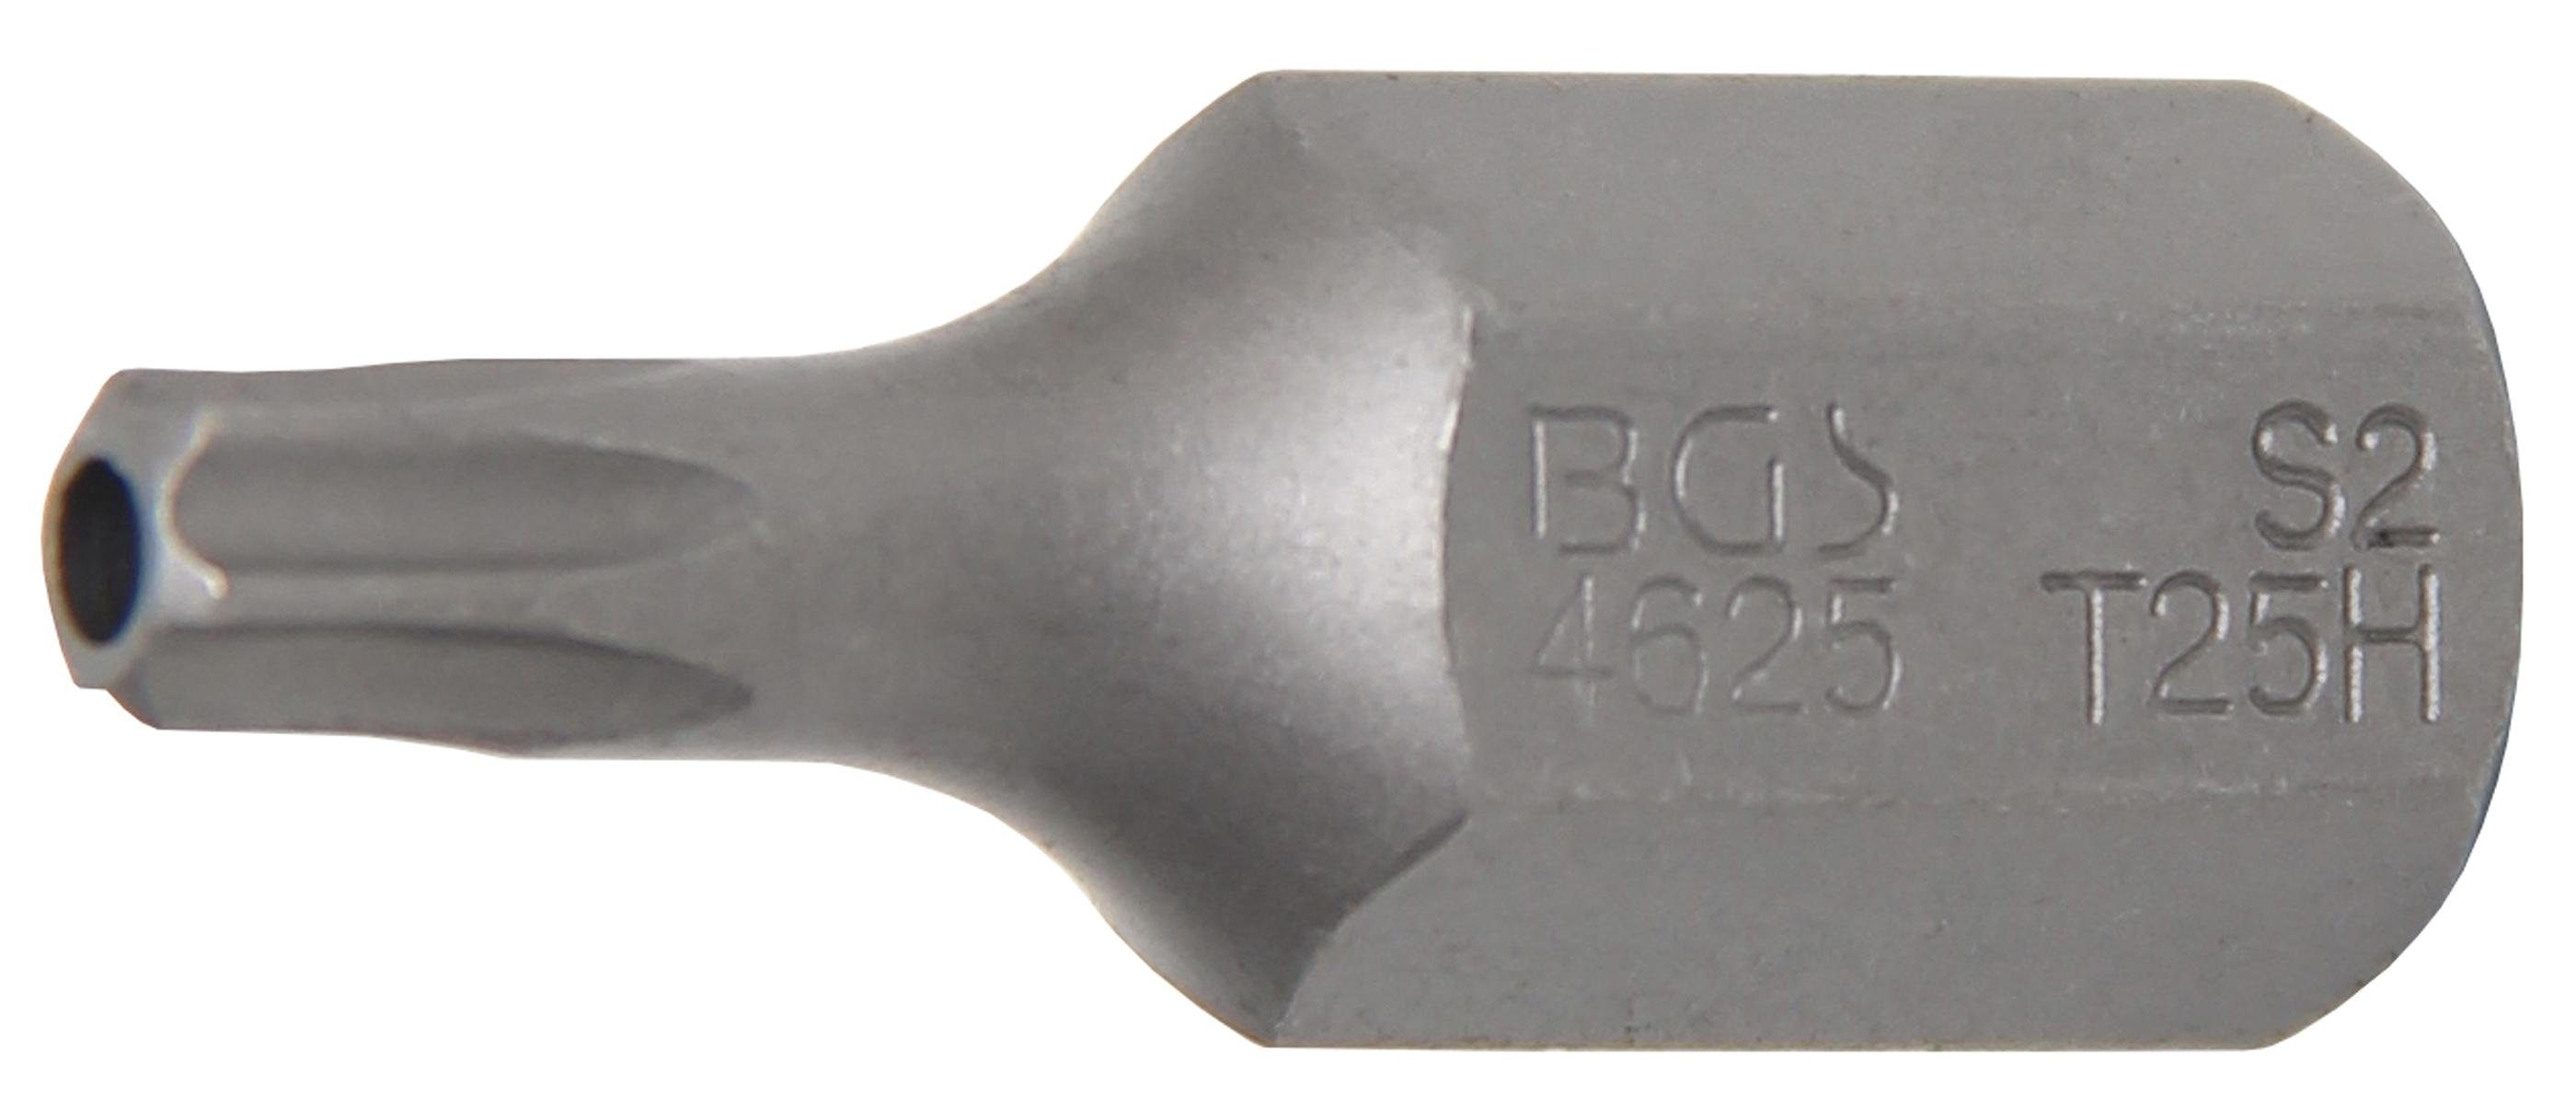 BGS technic Bit-Schraubendreher Bit, Länge 30 mm, Antrieb Außensechskant 10 mm (3/8), T-Profil (für Torx) mit Bohrung T25